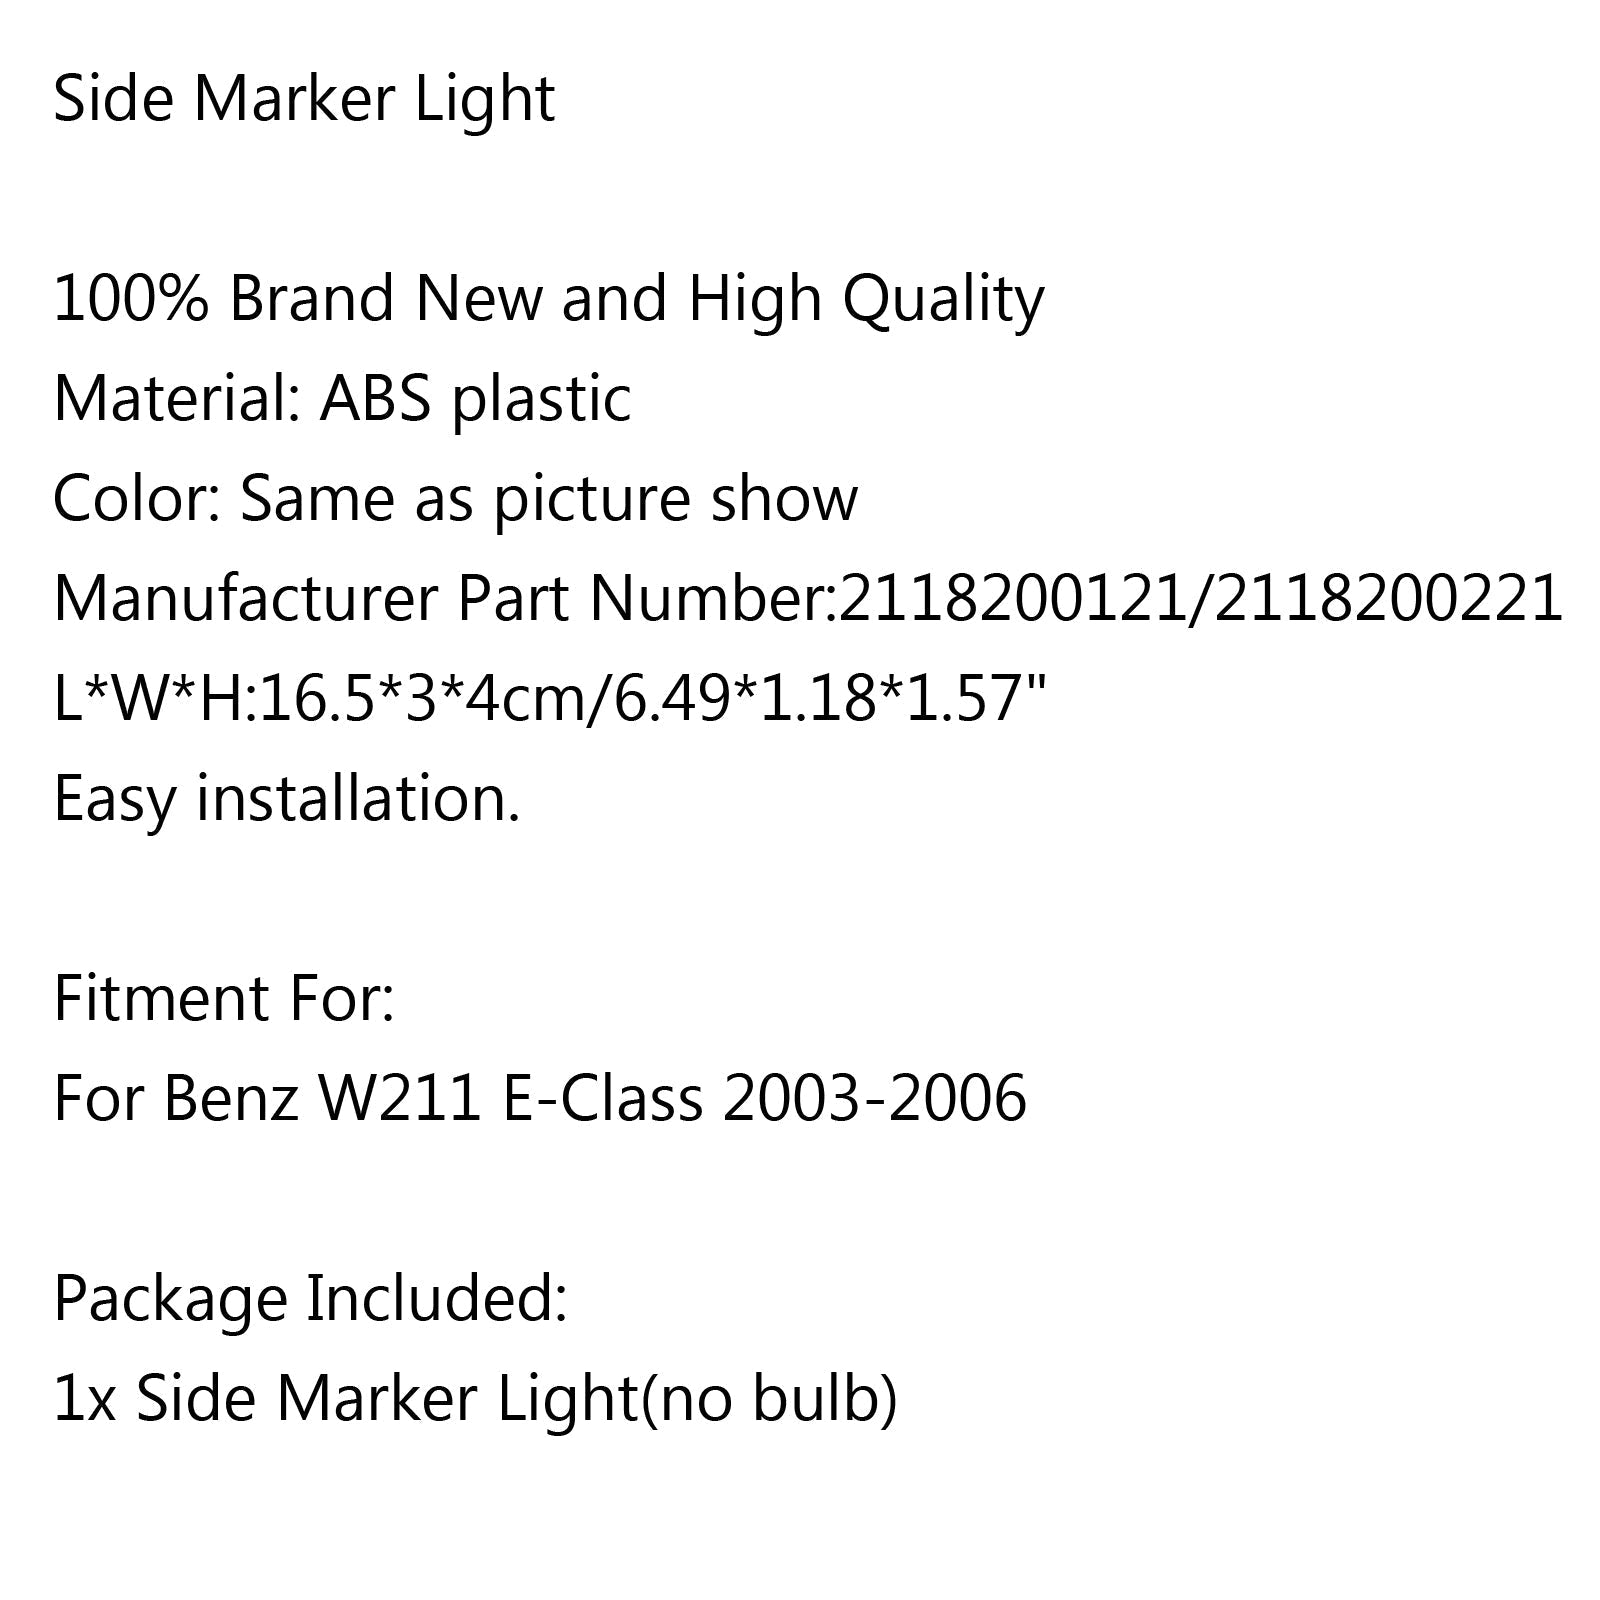 Para Benz W211 E Class 2003-2006 lámpara de marcador lateral en luz de señal de giro de parachoques genérica